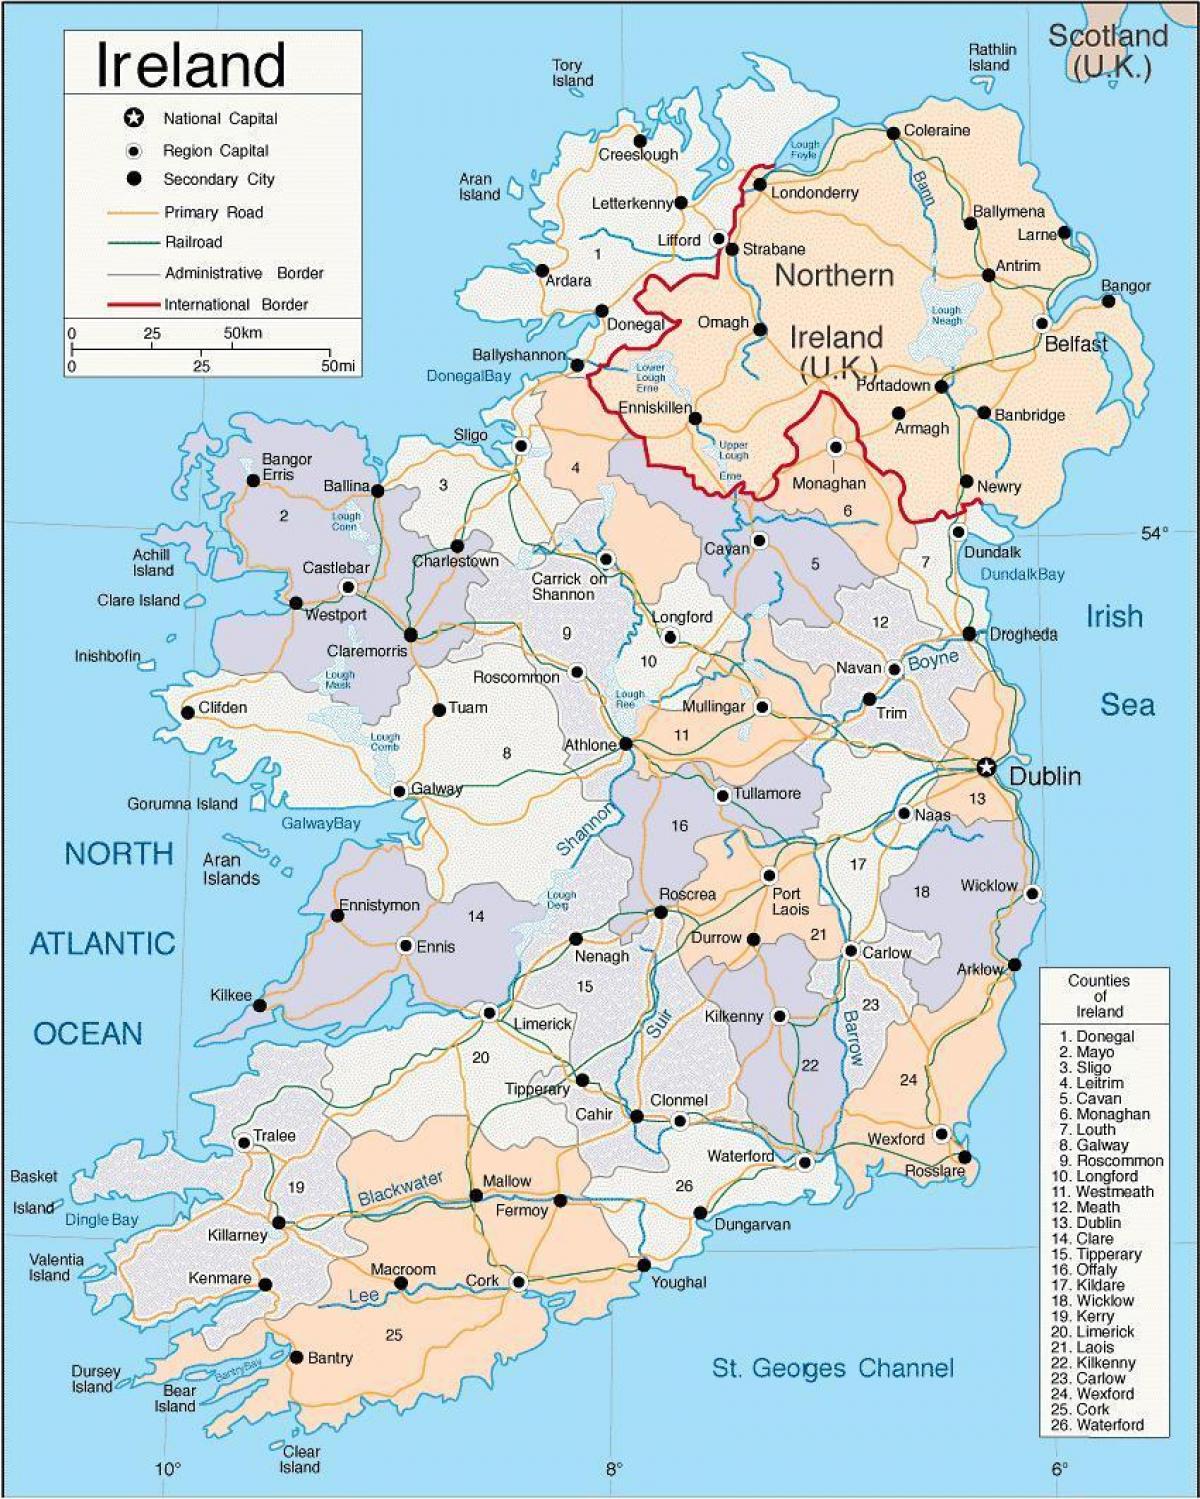 χάρτης της ιρλανδίας, δείχνοντας πόλεις